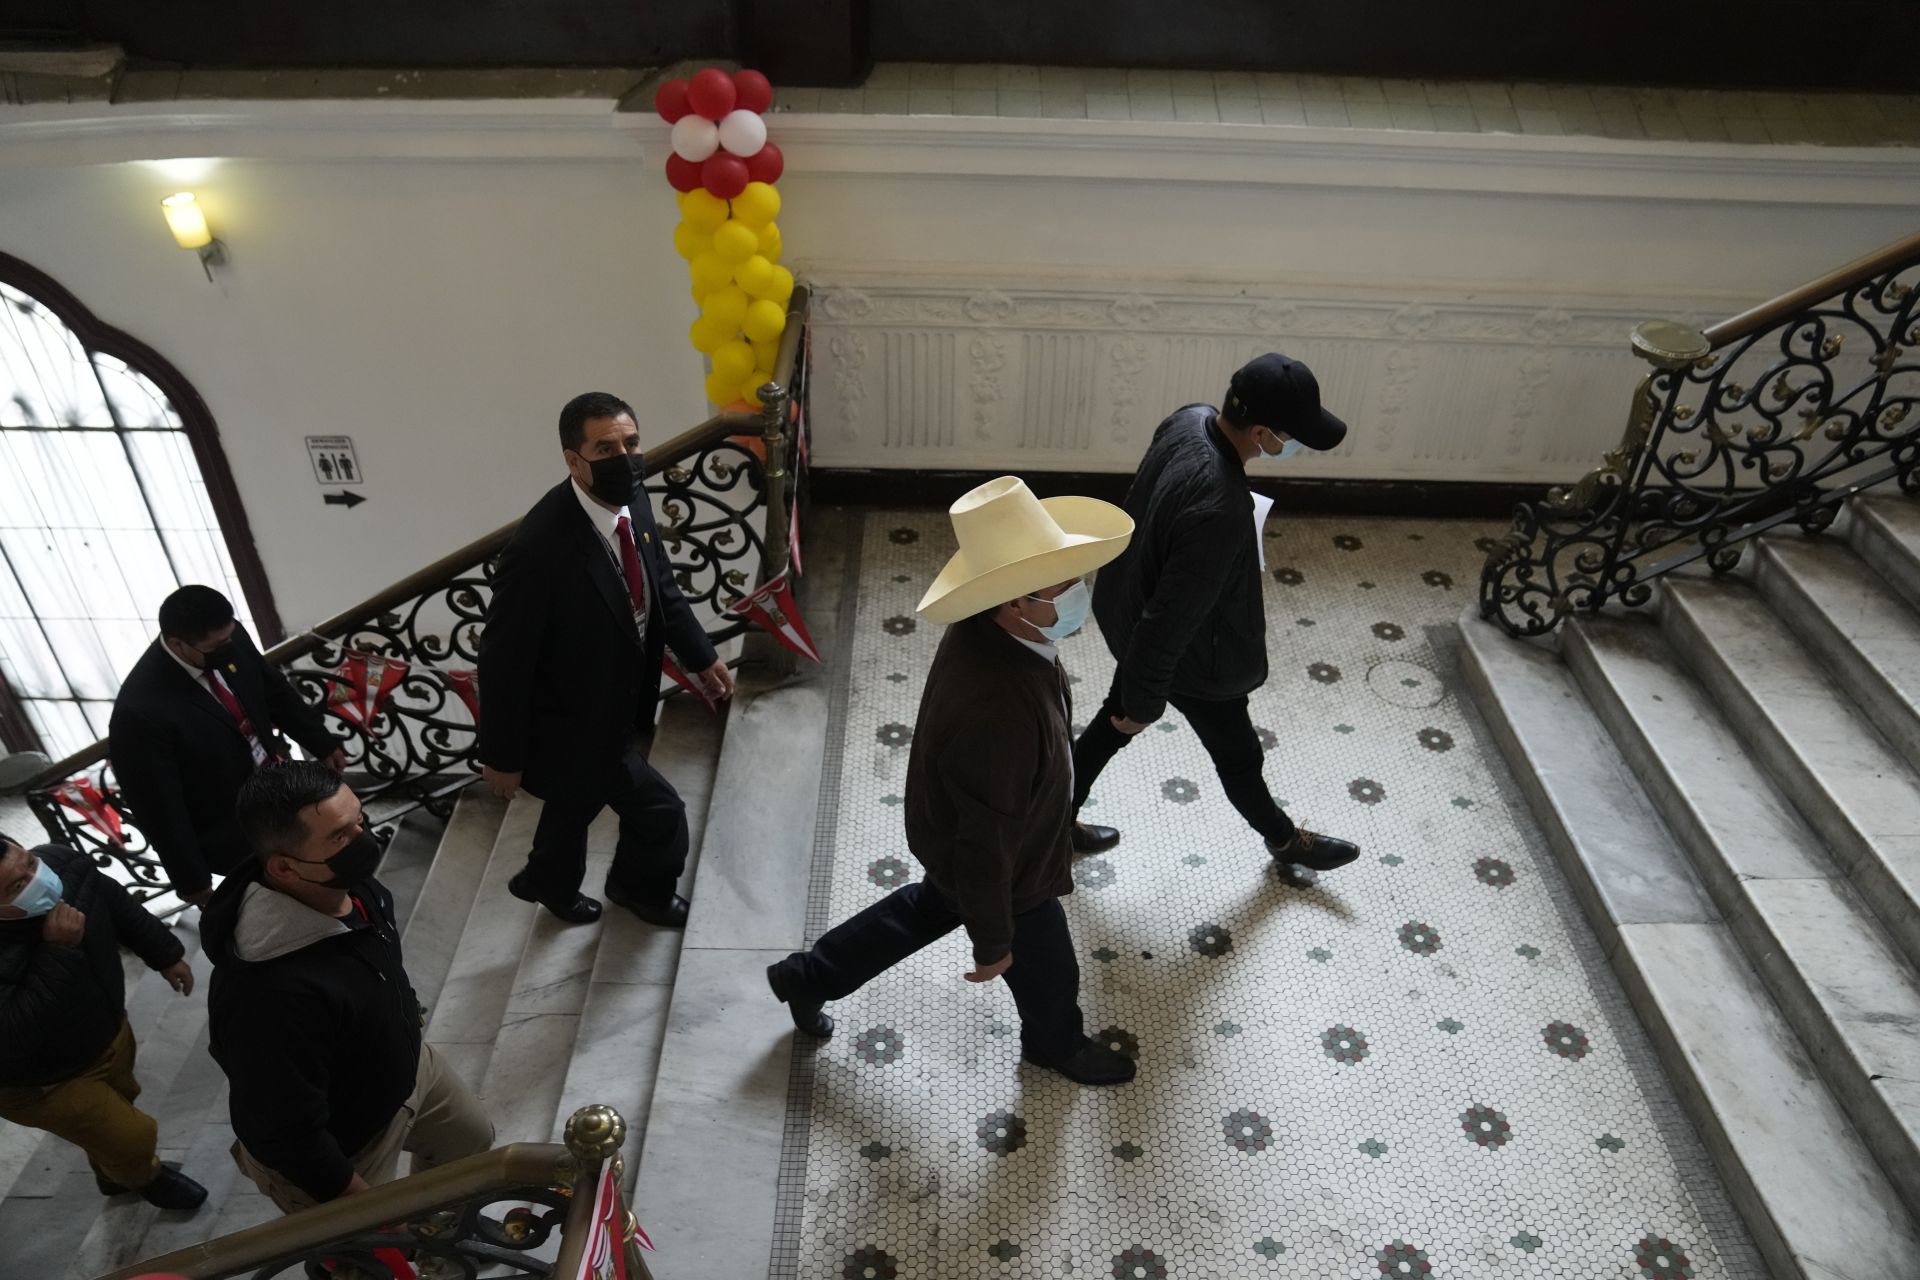 15 юни 2021 г. - С традиционна шапка на глава кандидатът за президент на Перу Педро Кастийо тръгва към залата за пресконференция. Седмица след президентските избори властите продължаваха да проверяват твърденията на Кейко Фухимори за измама в полза на Кастийо.